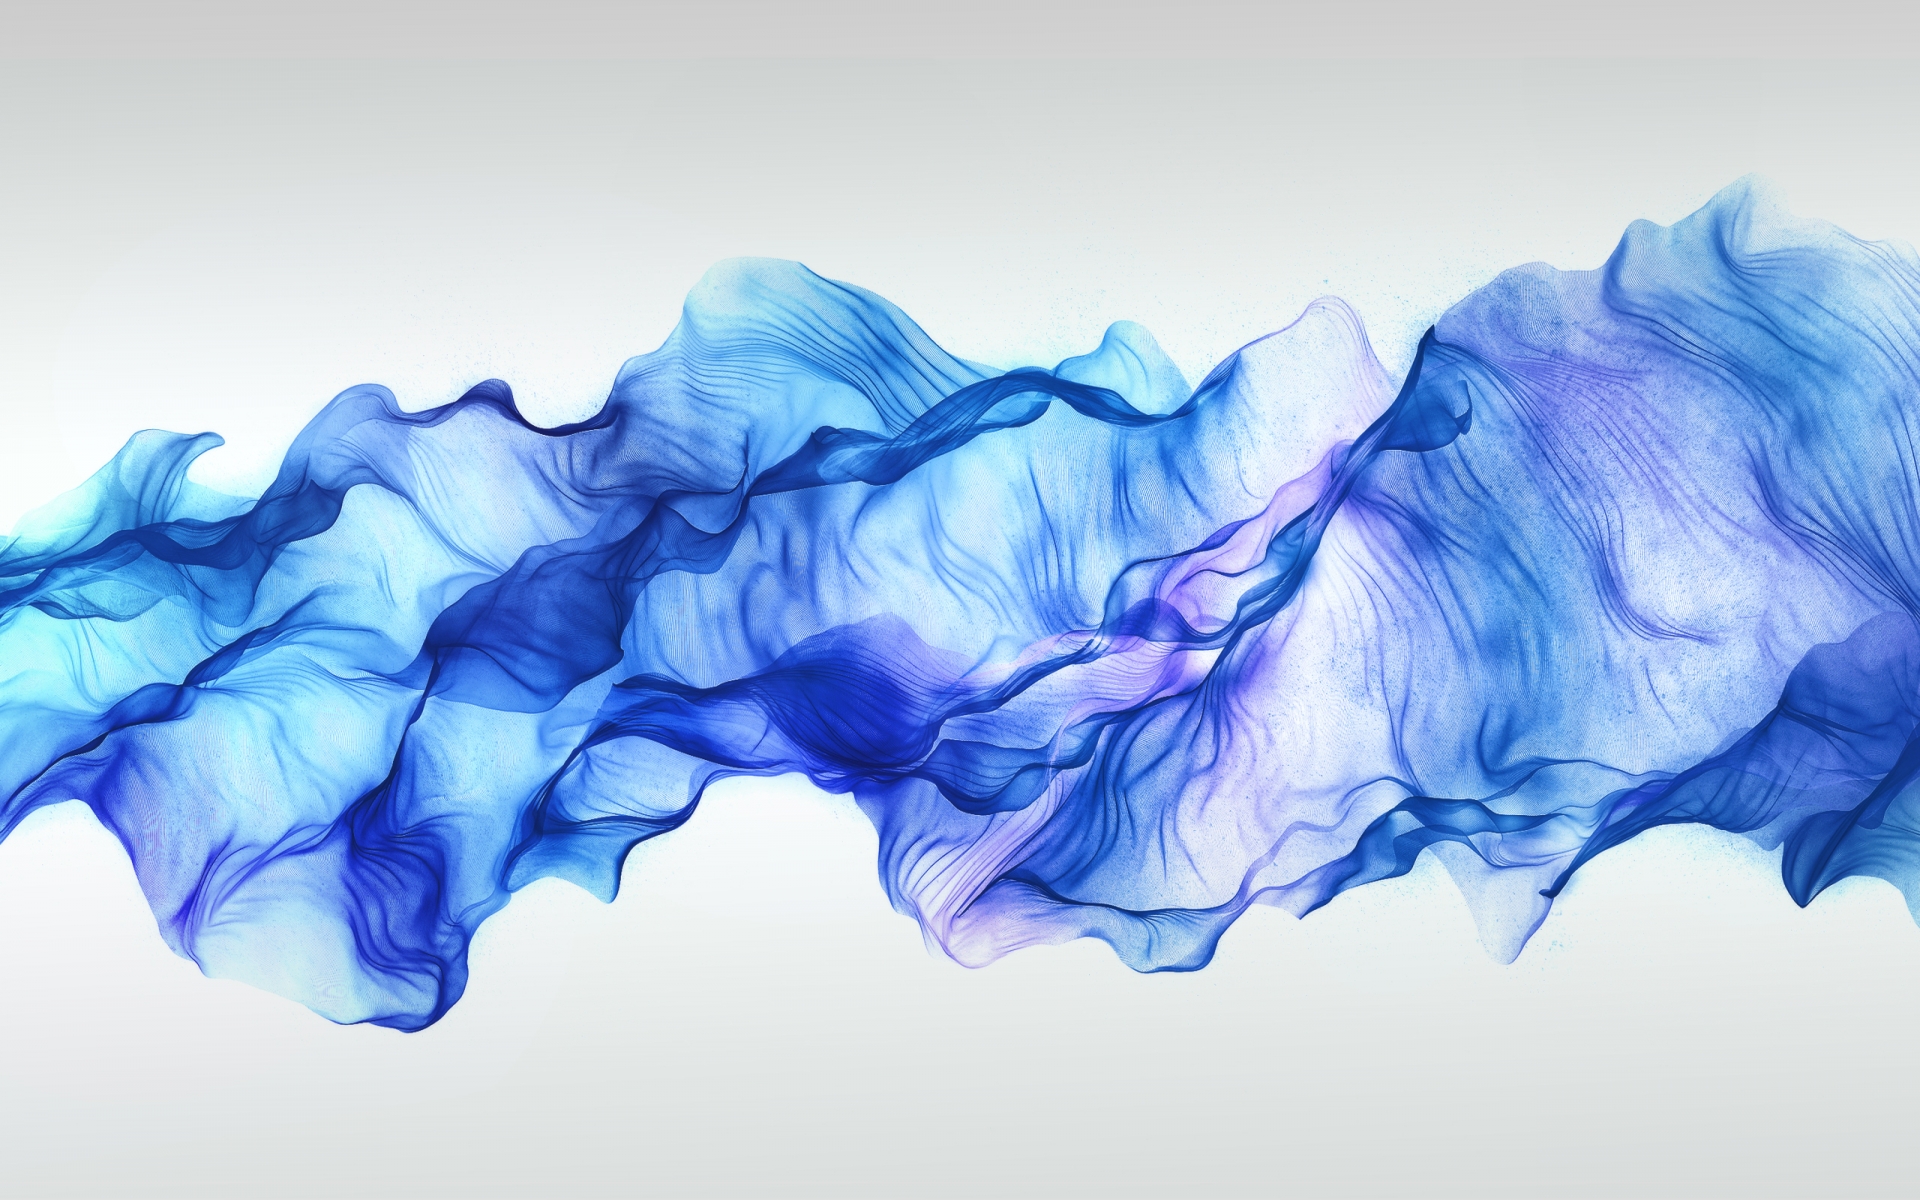 abstract, Fractal, 3d, Cg, Digital, Art, Smoke, Silk, Fabric, Artistic, Blue, Waves Wallpaper